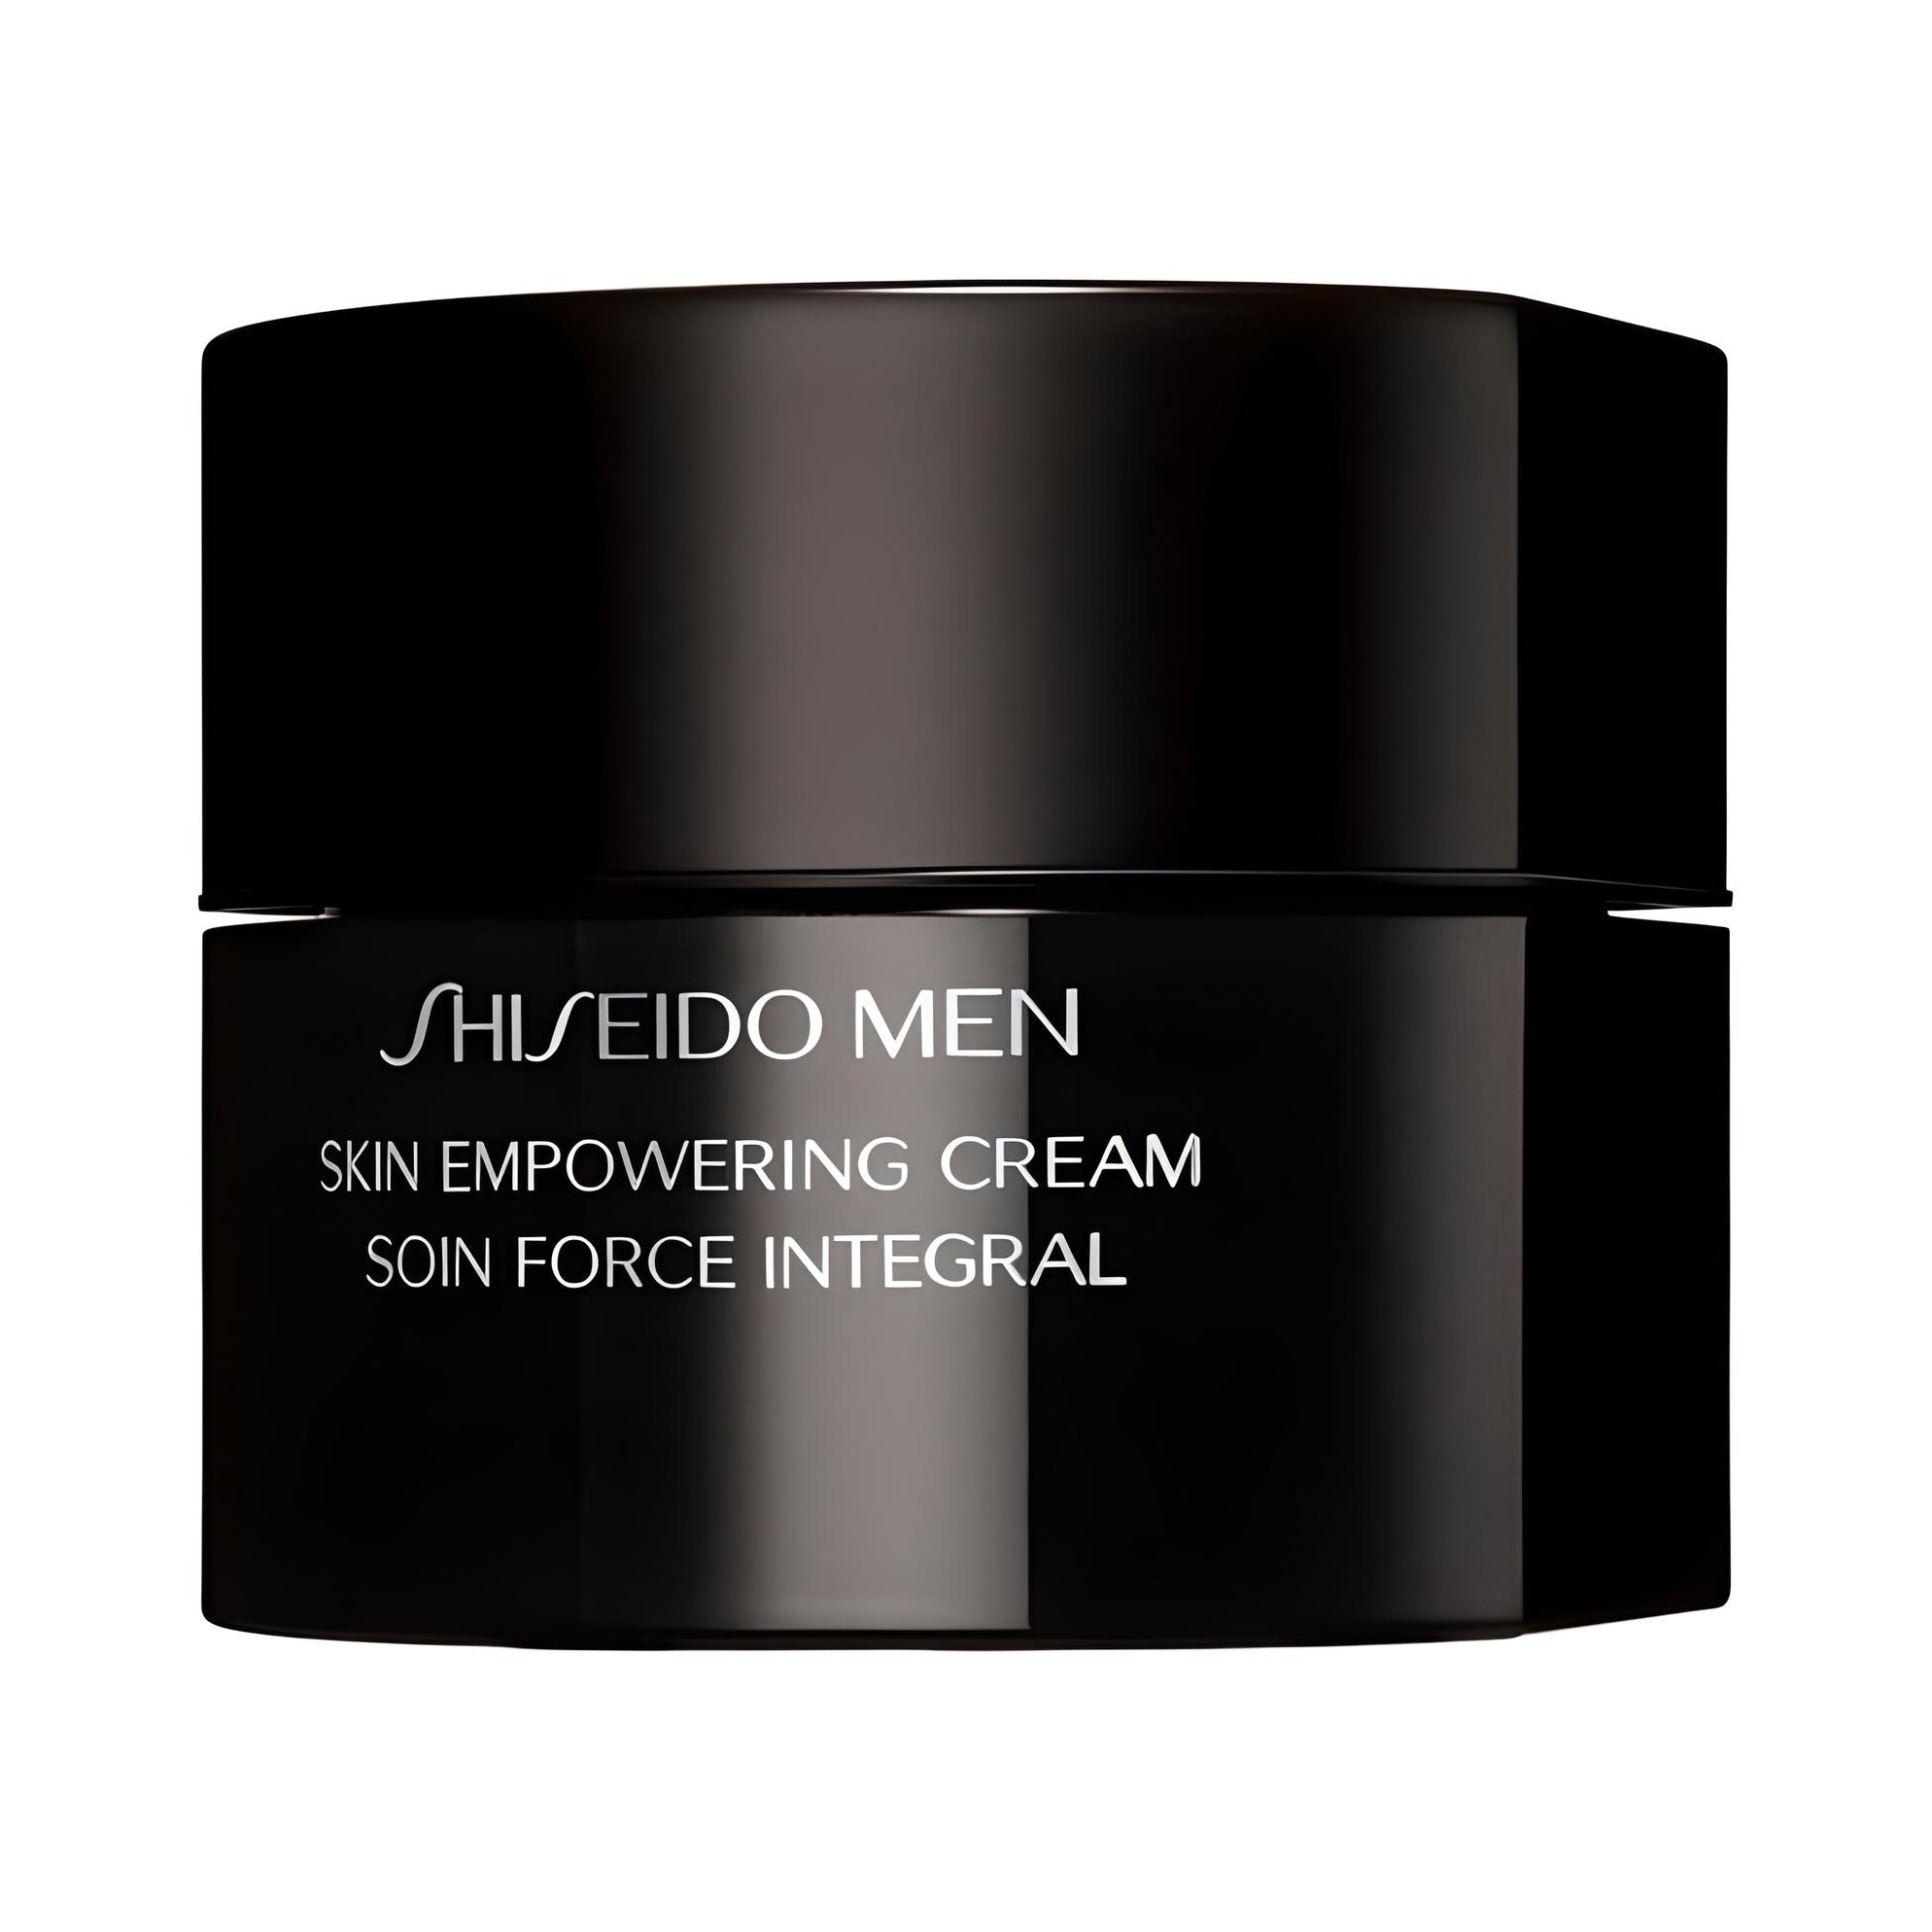 MEN skin empowering cream